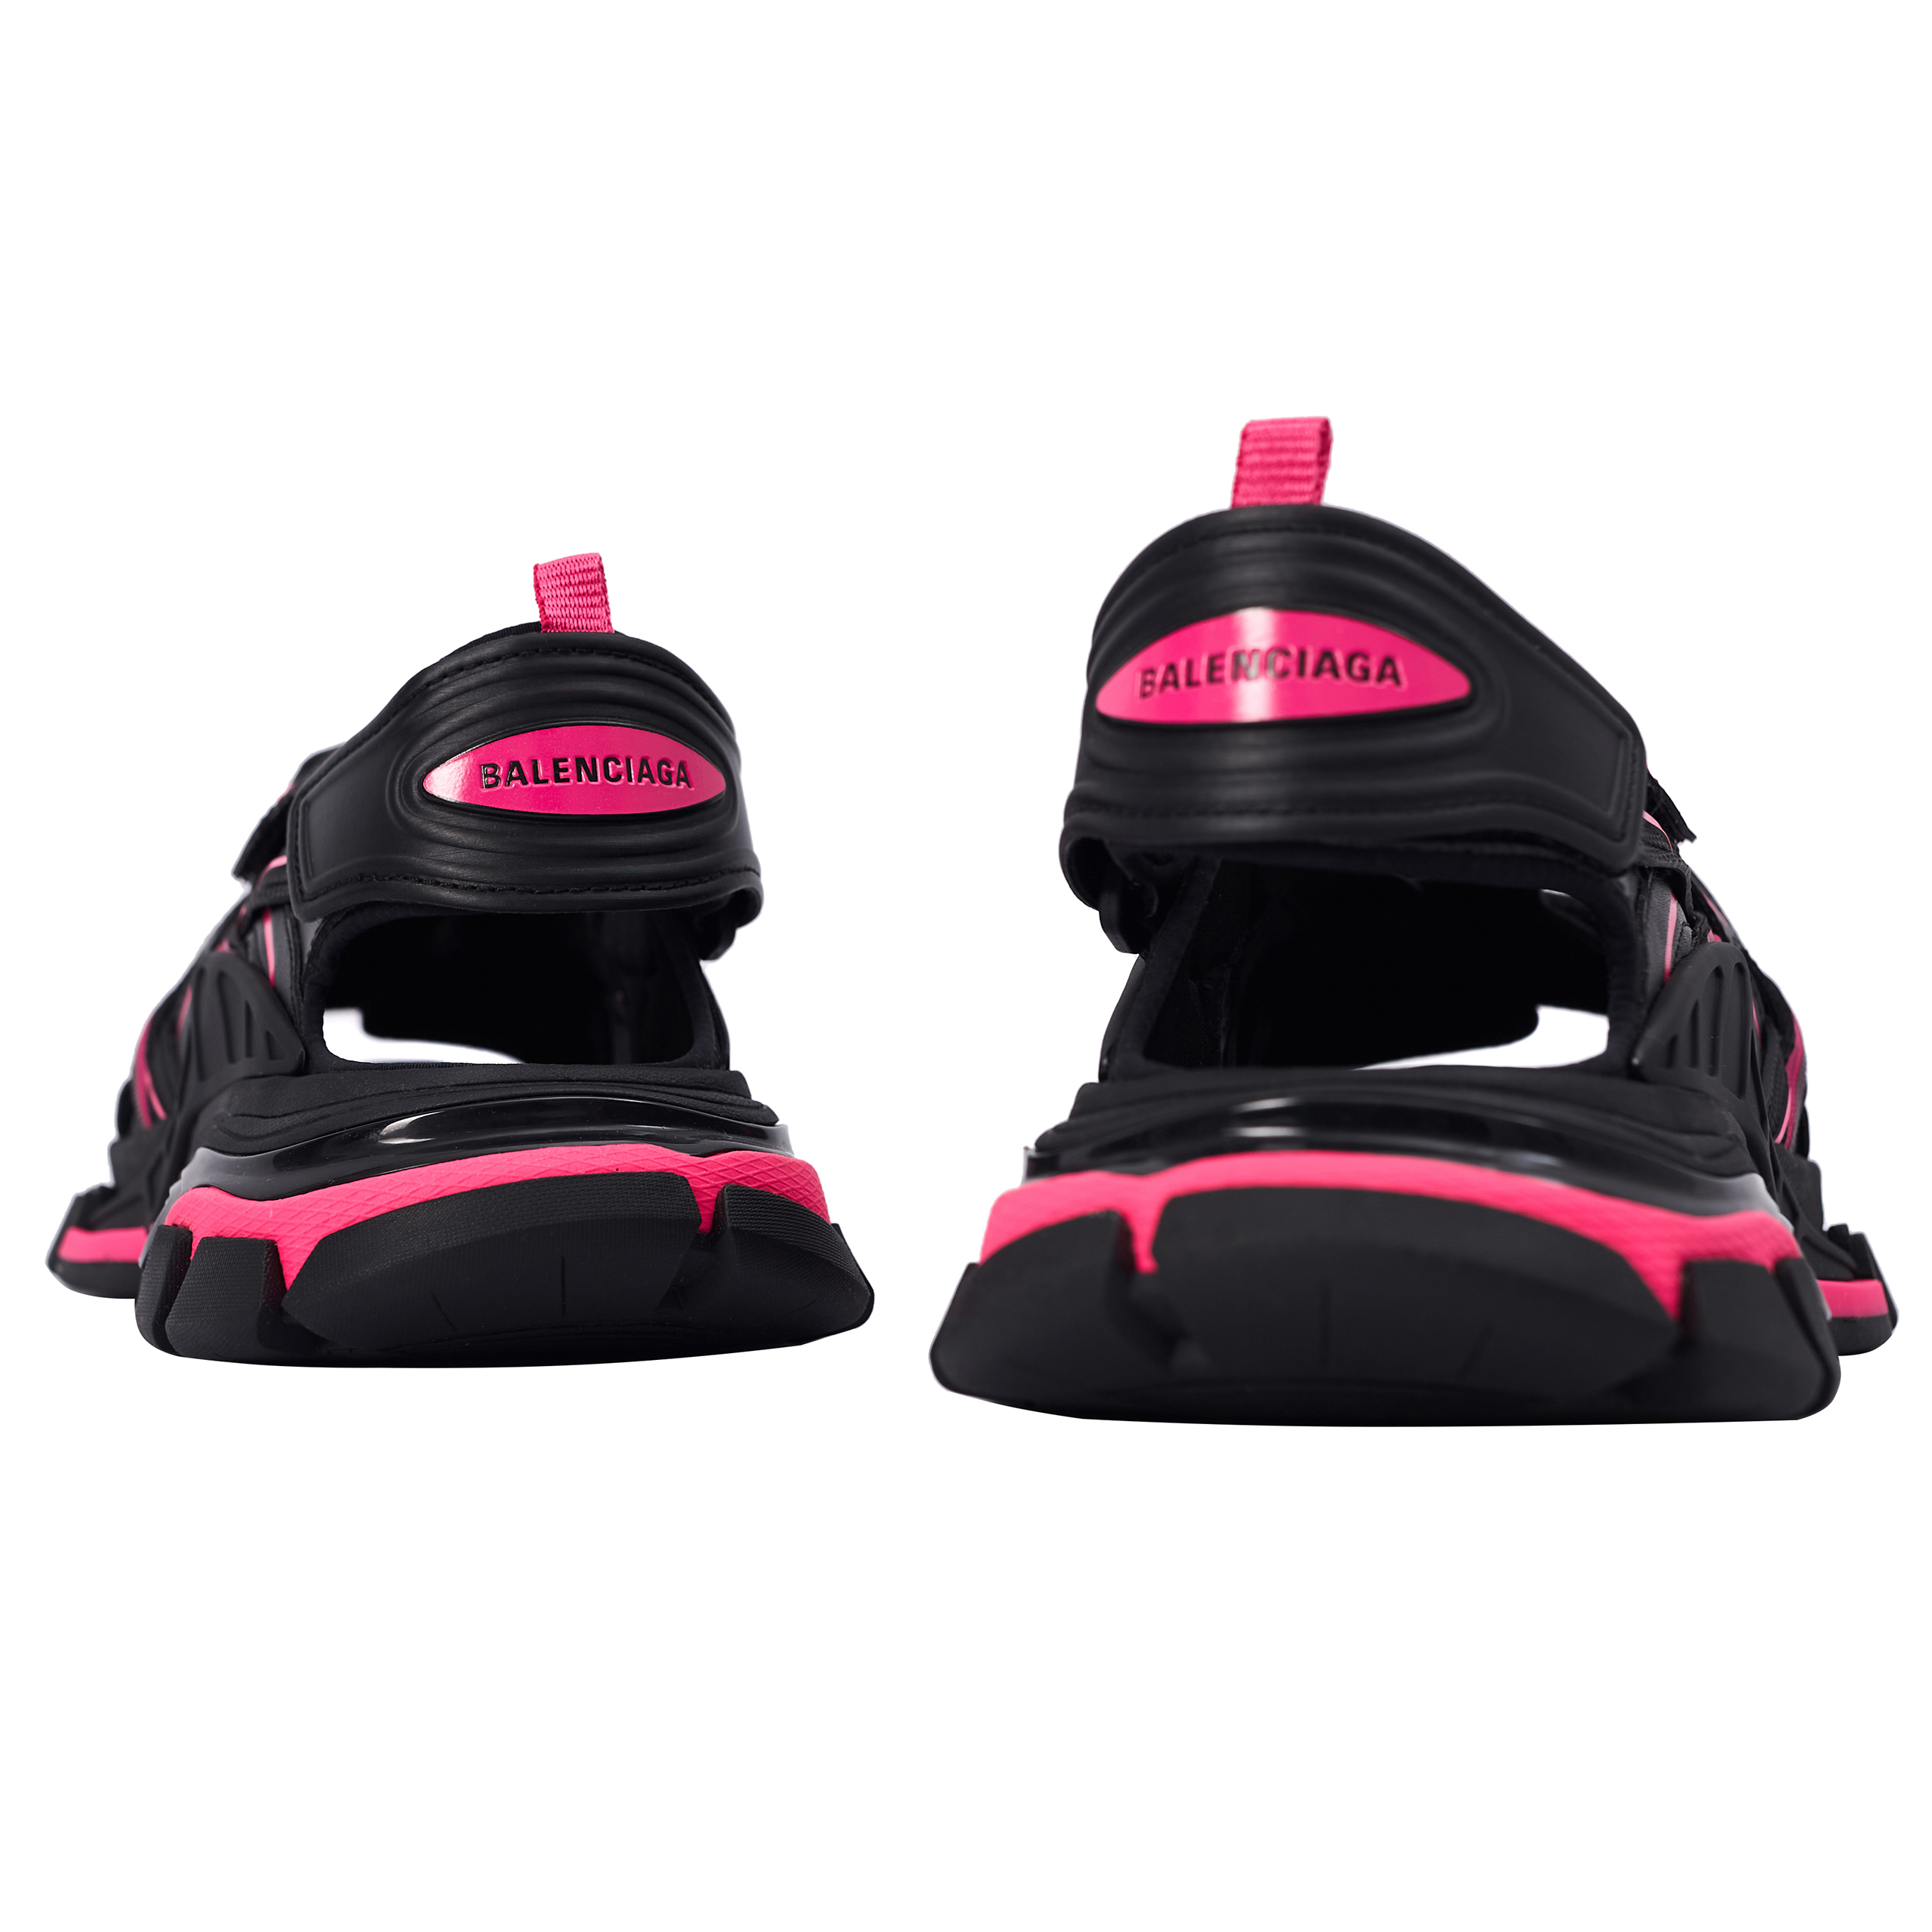 Черно-розовые сандалии Track Balenciaga 617543/W3AJ1/1050, размер 37 617543/W3AJ1/1050 - фото 3